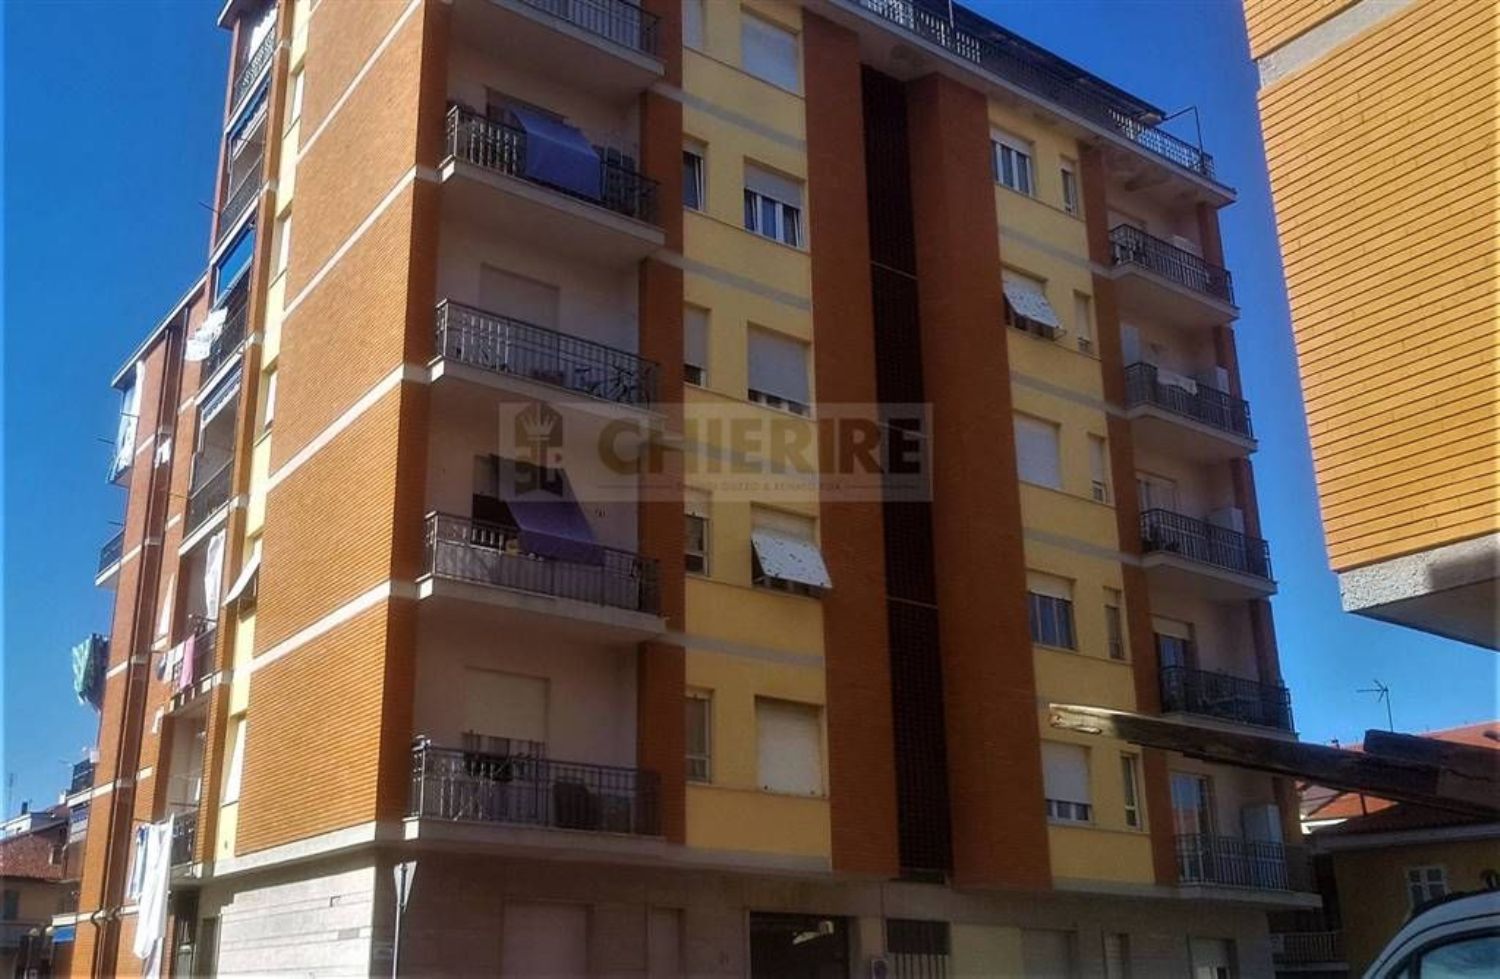 Appartamento in vendita a Chieri, 3 locali, prezzo € 105.000 | PortaleAgenzieImmobiliari.it